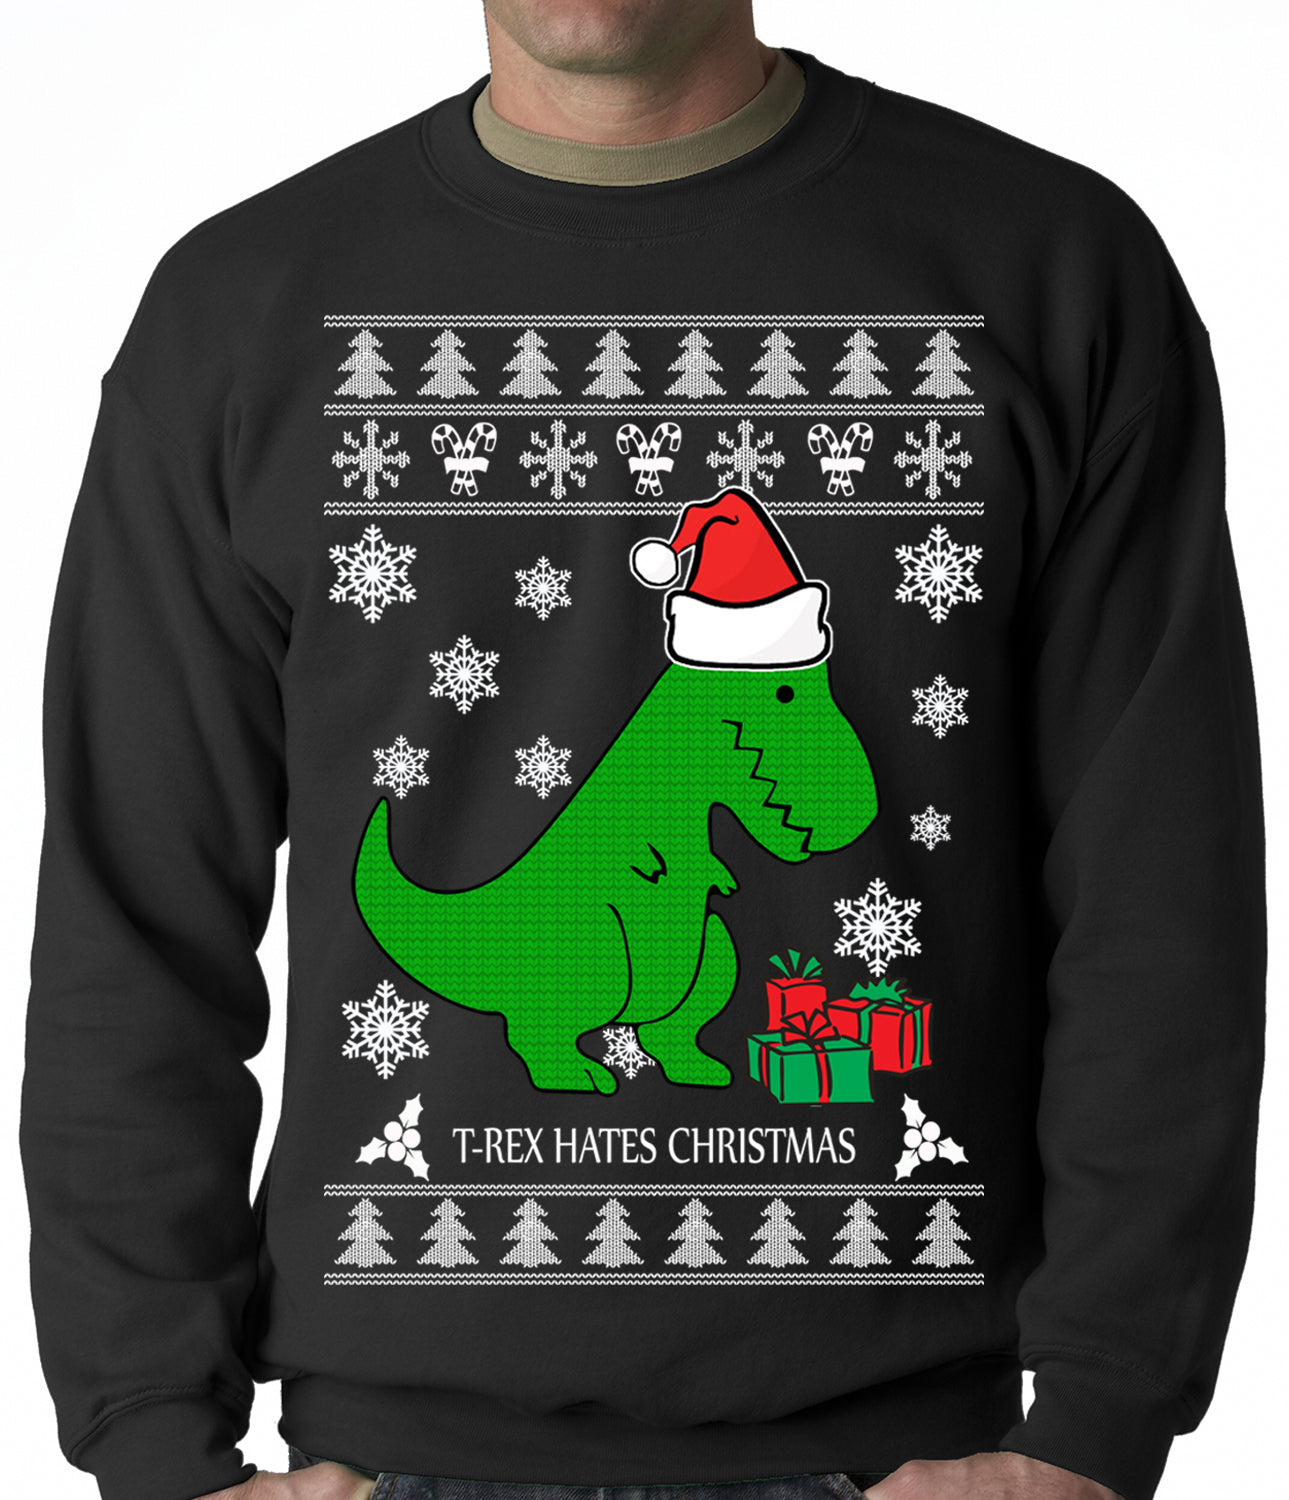 T-Rex Hates Christmas Ugly Christmas Shirt